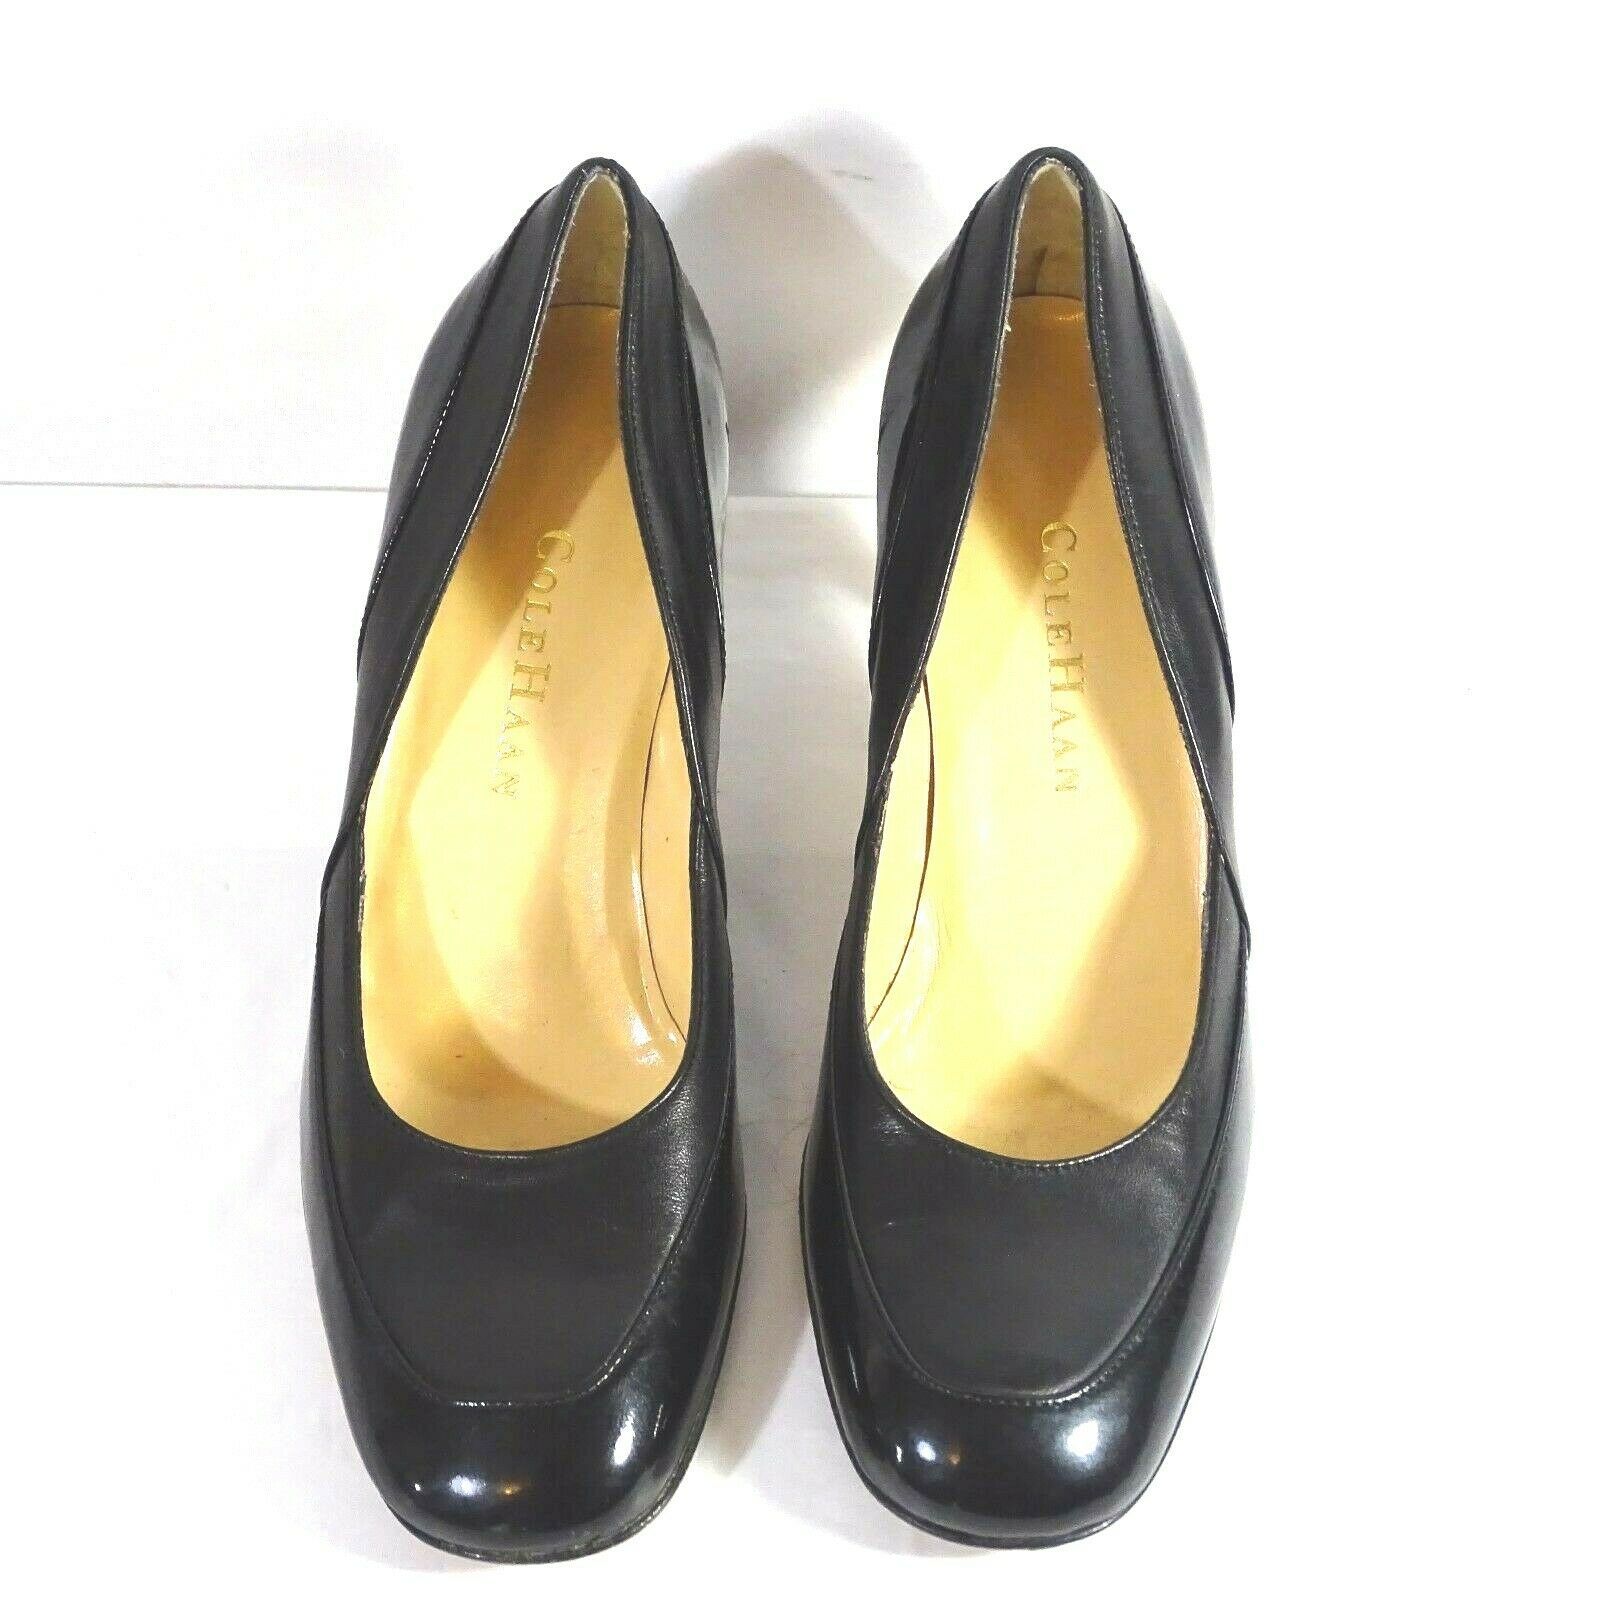 Cole Haan Pumps Shoe Patent Leather Women Size 6 B Black 2.5